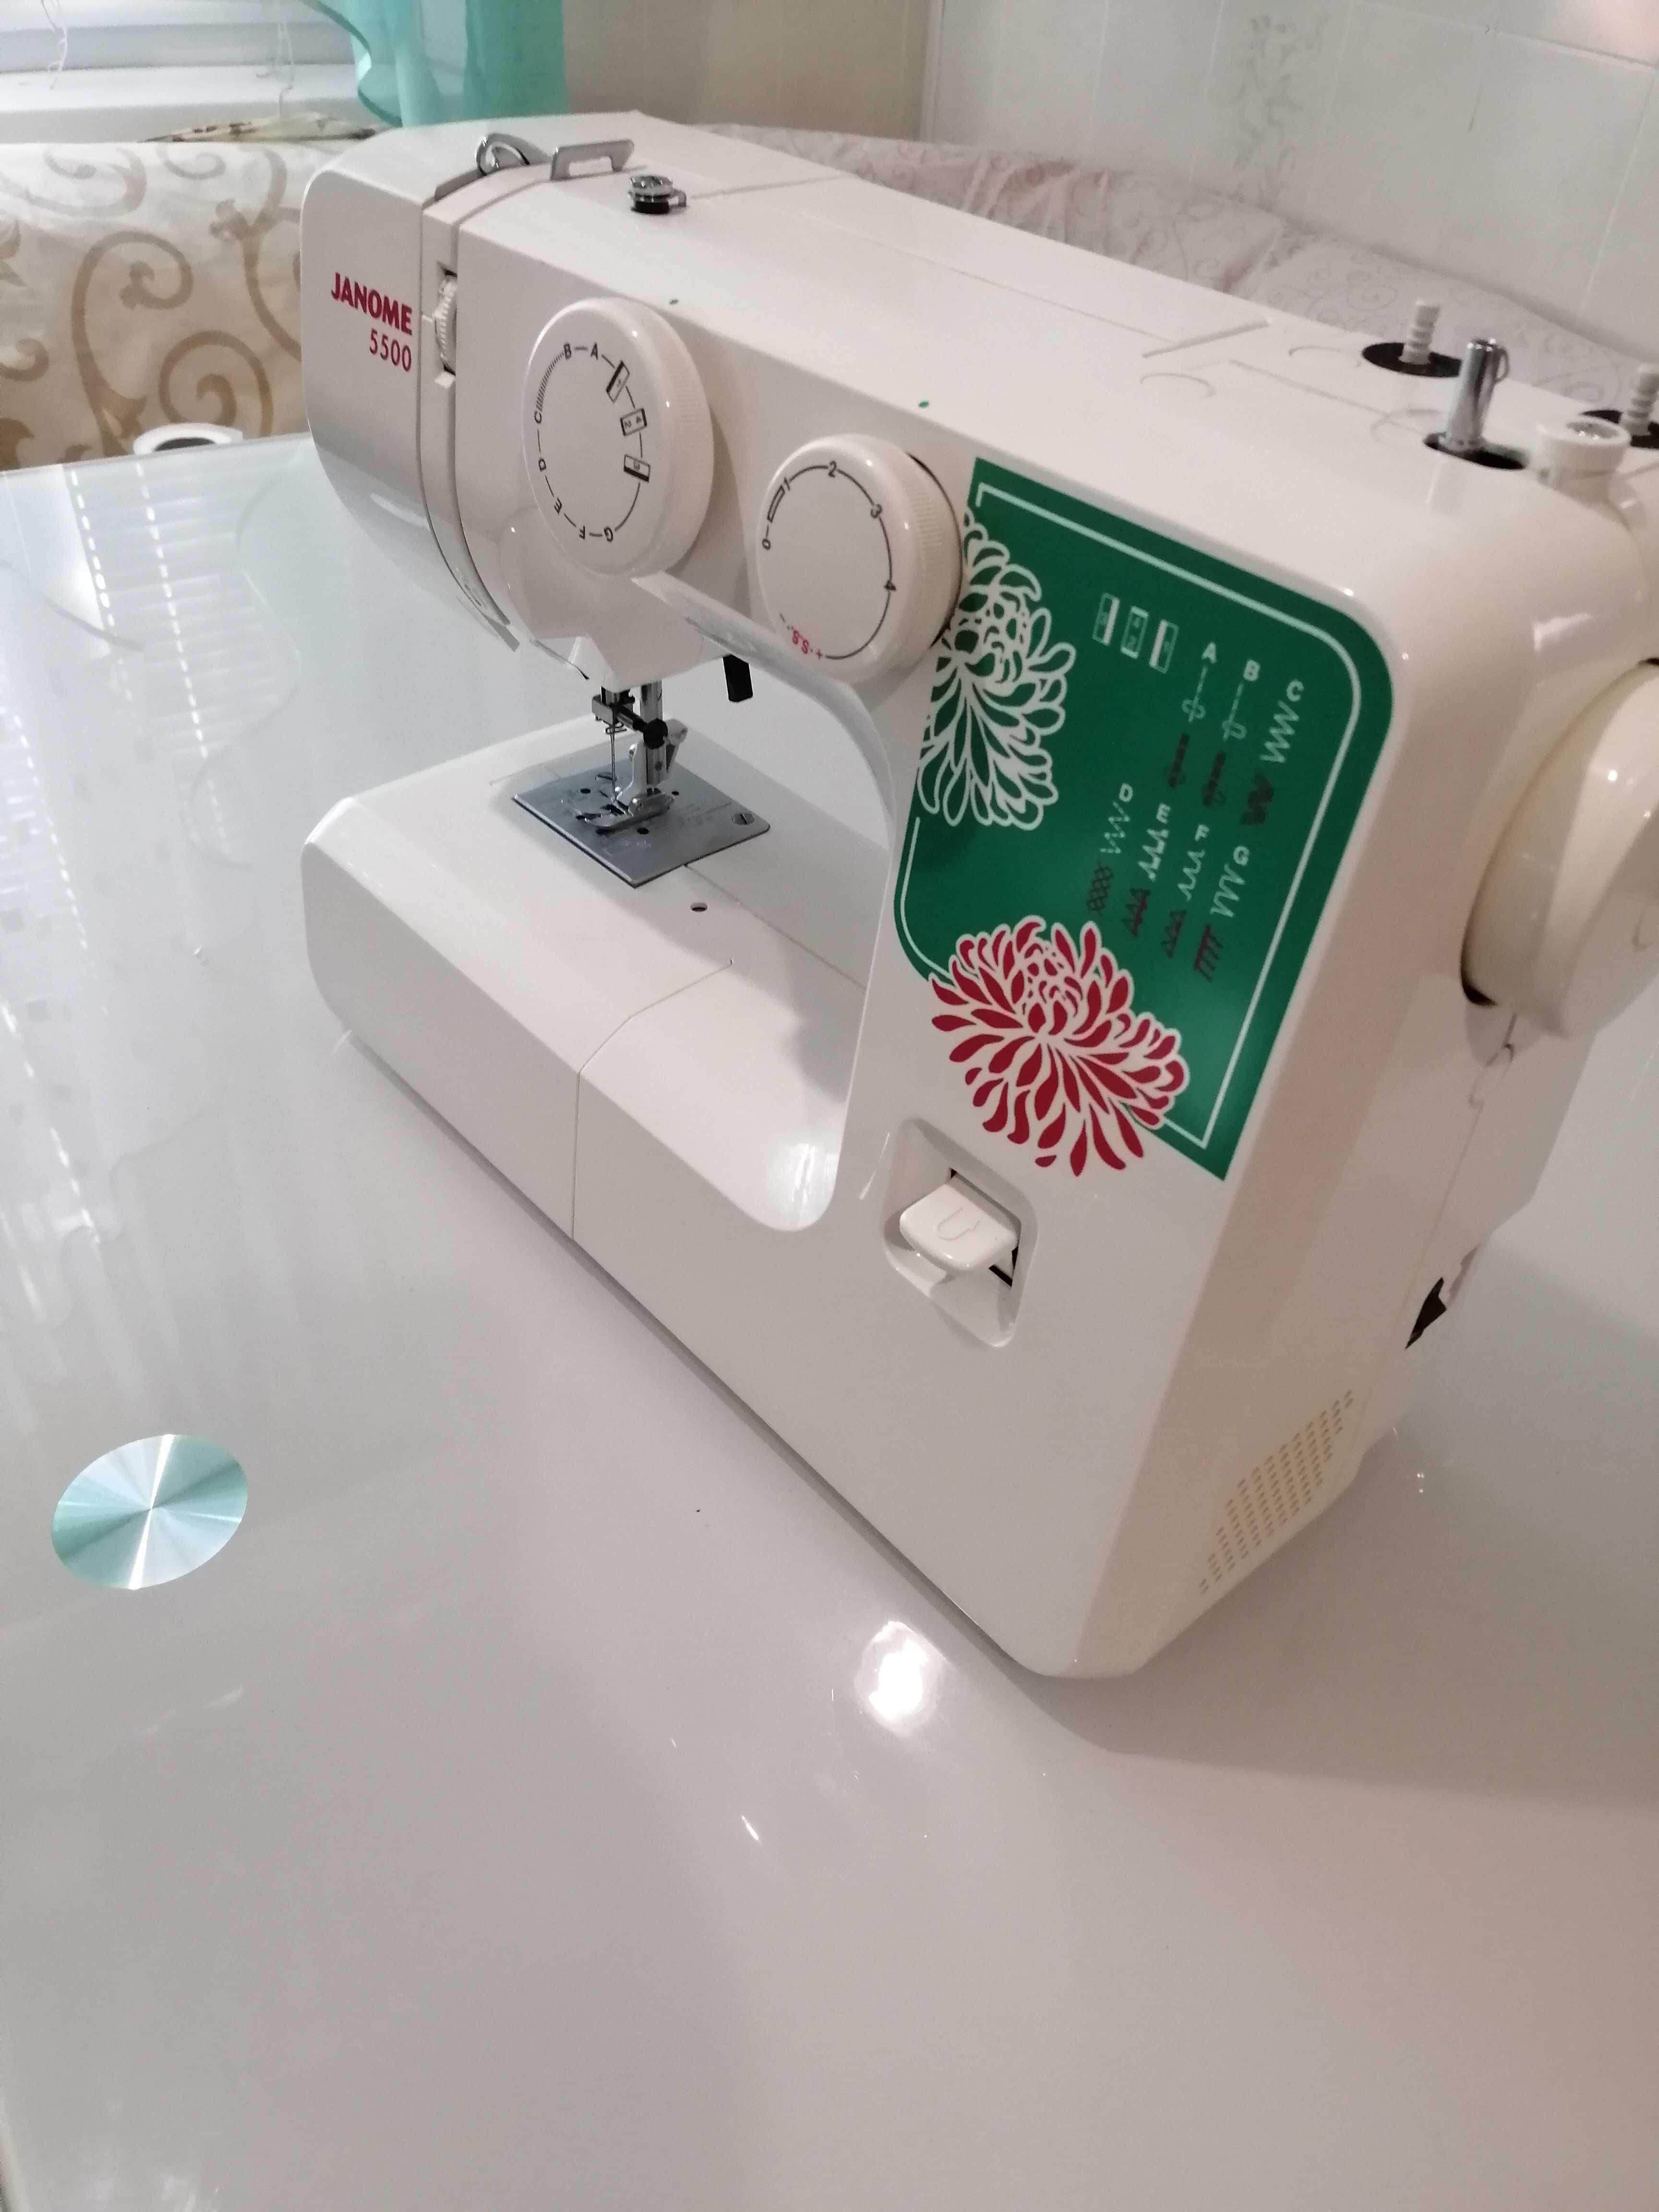 Бытовая швейная машина Janome 5500